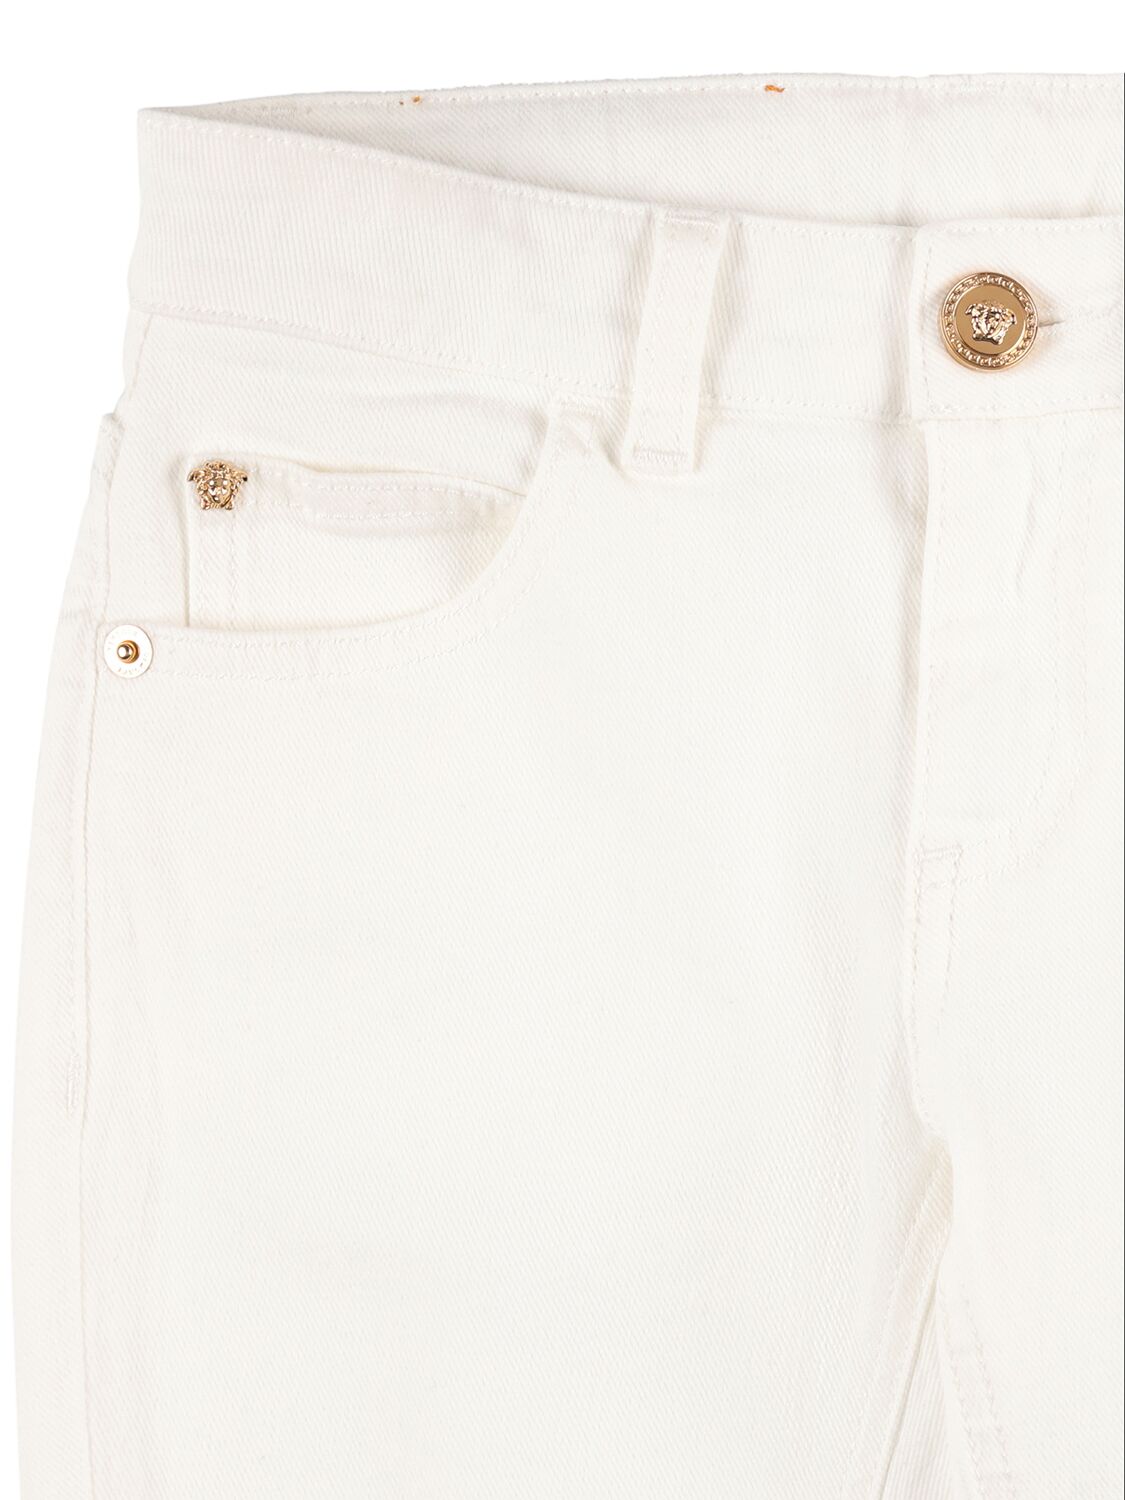 Shop Versace Cotton Denim Pants In White